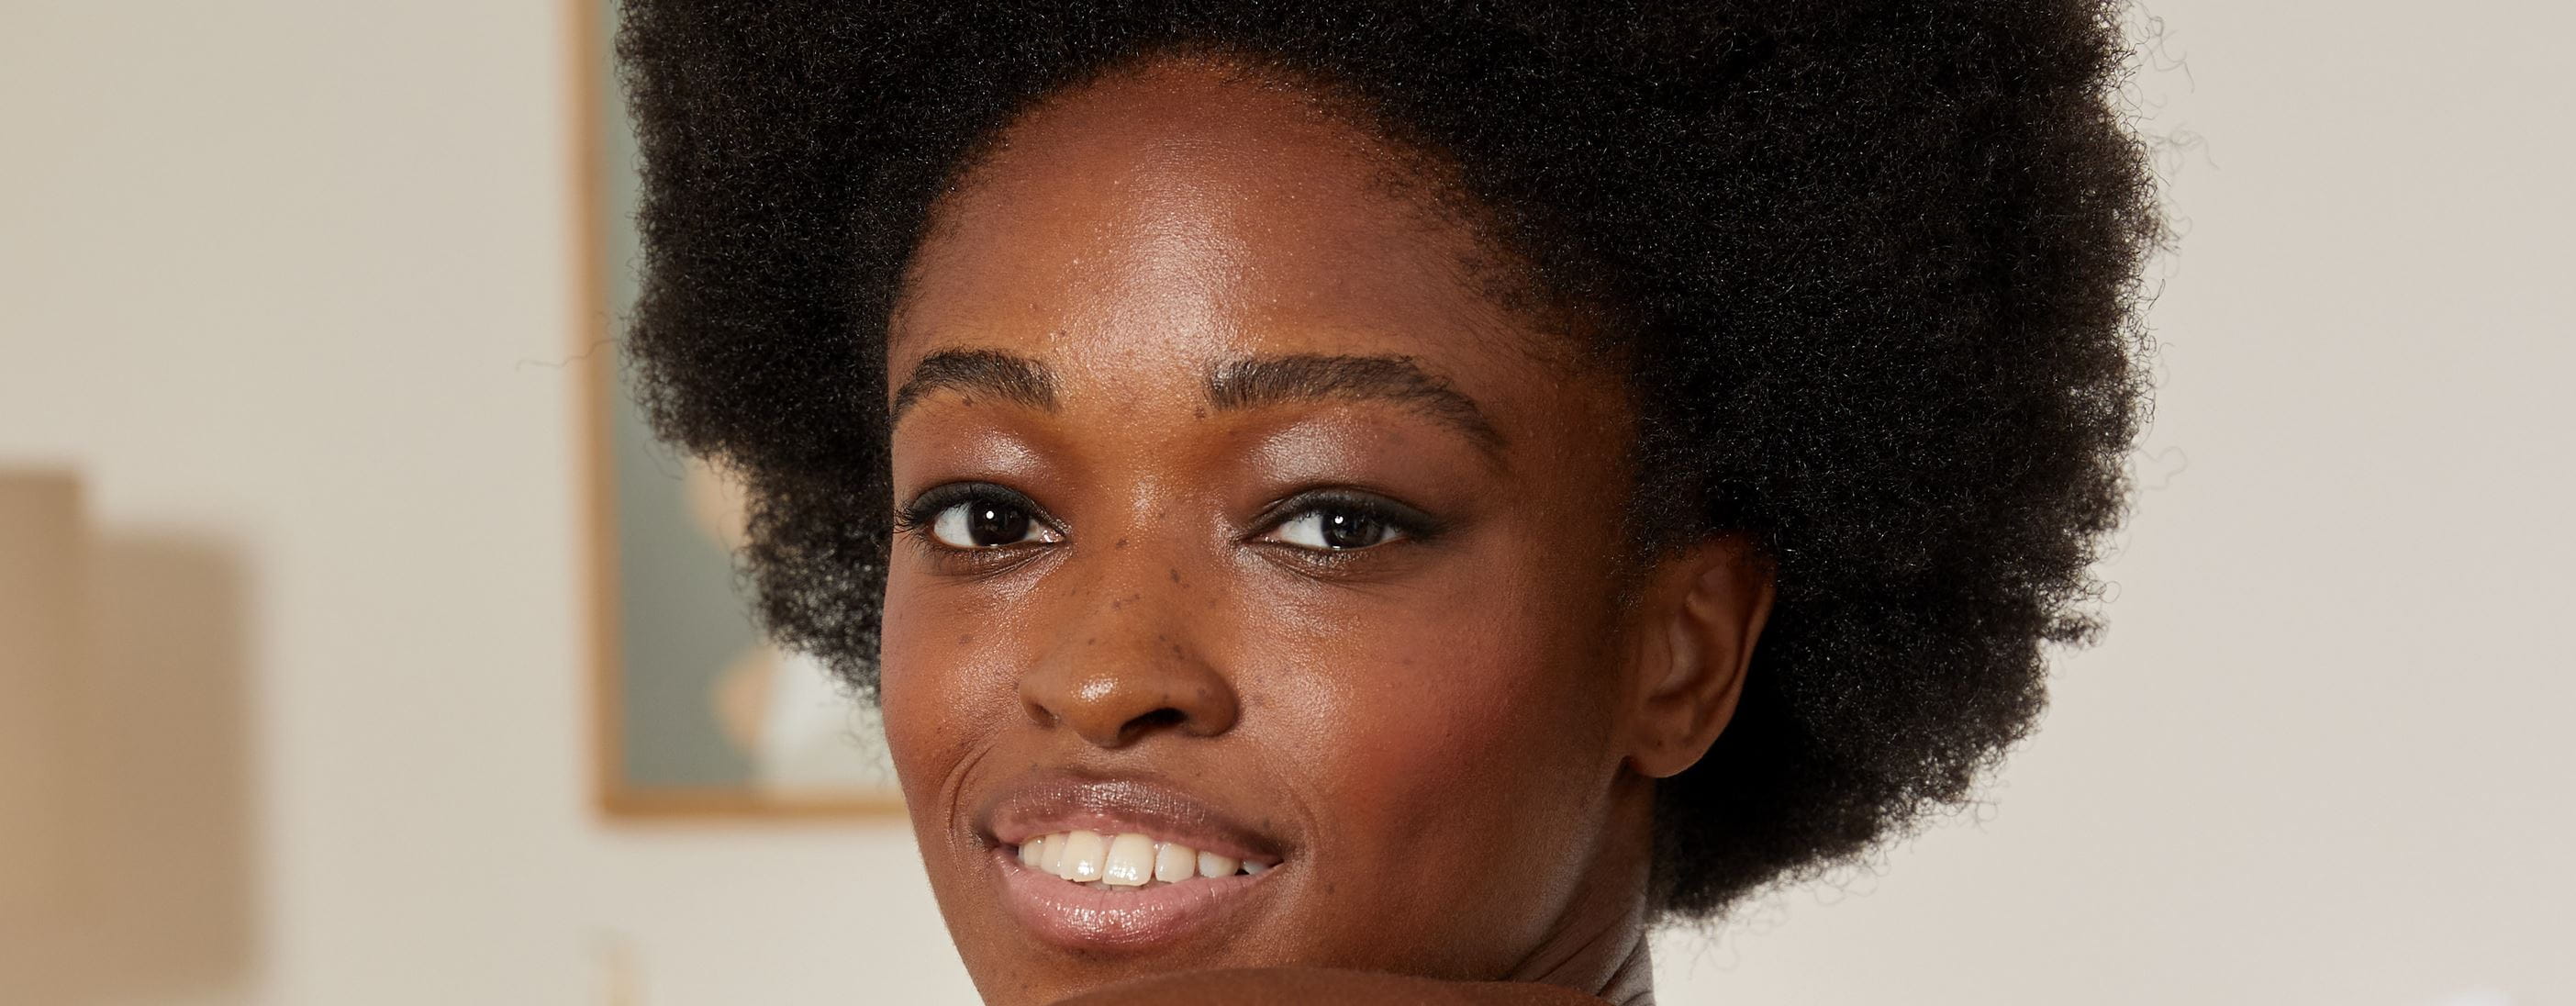 kobieta z włosami z teksturą afro, uśmiechając się